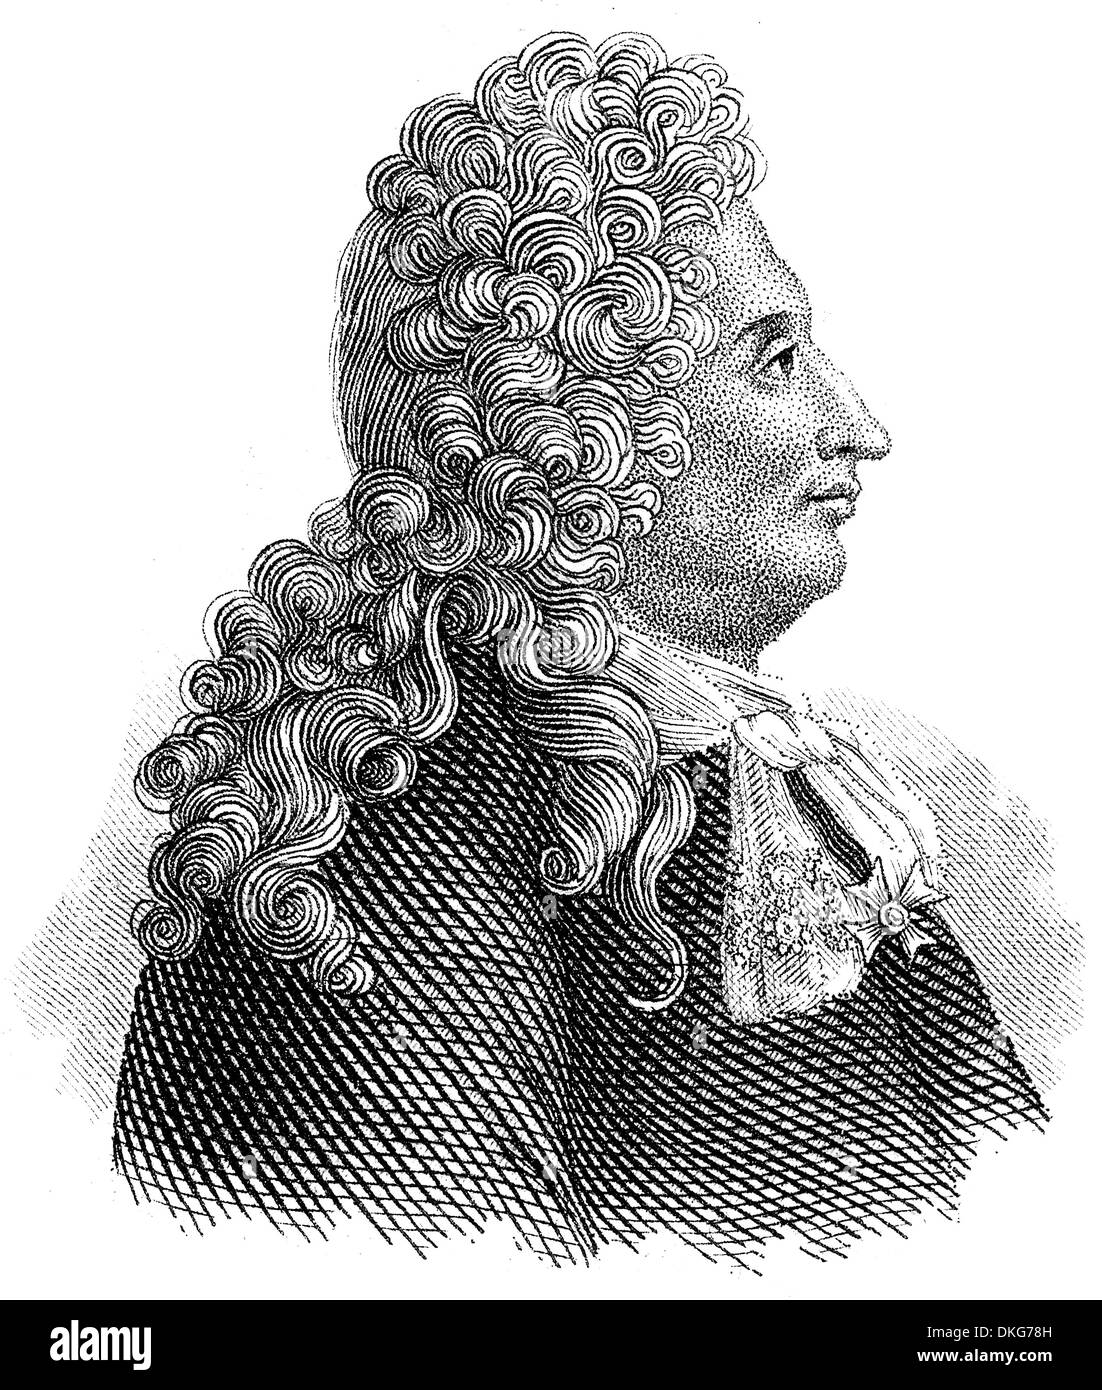 Le Portrait de Jules Hardouin-Mansart, 1646 - 1708, un architecte français de l'architecture Baroque Banque D'Images